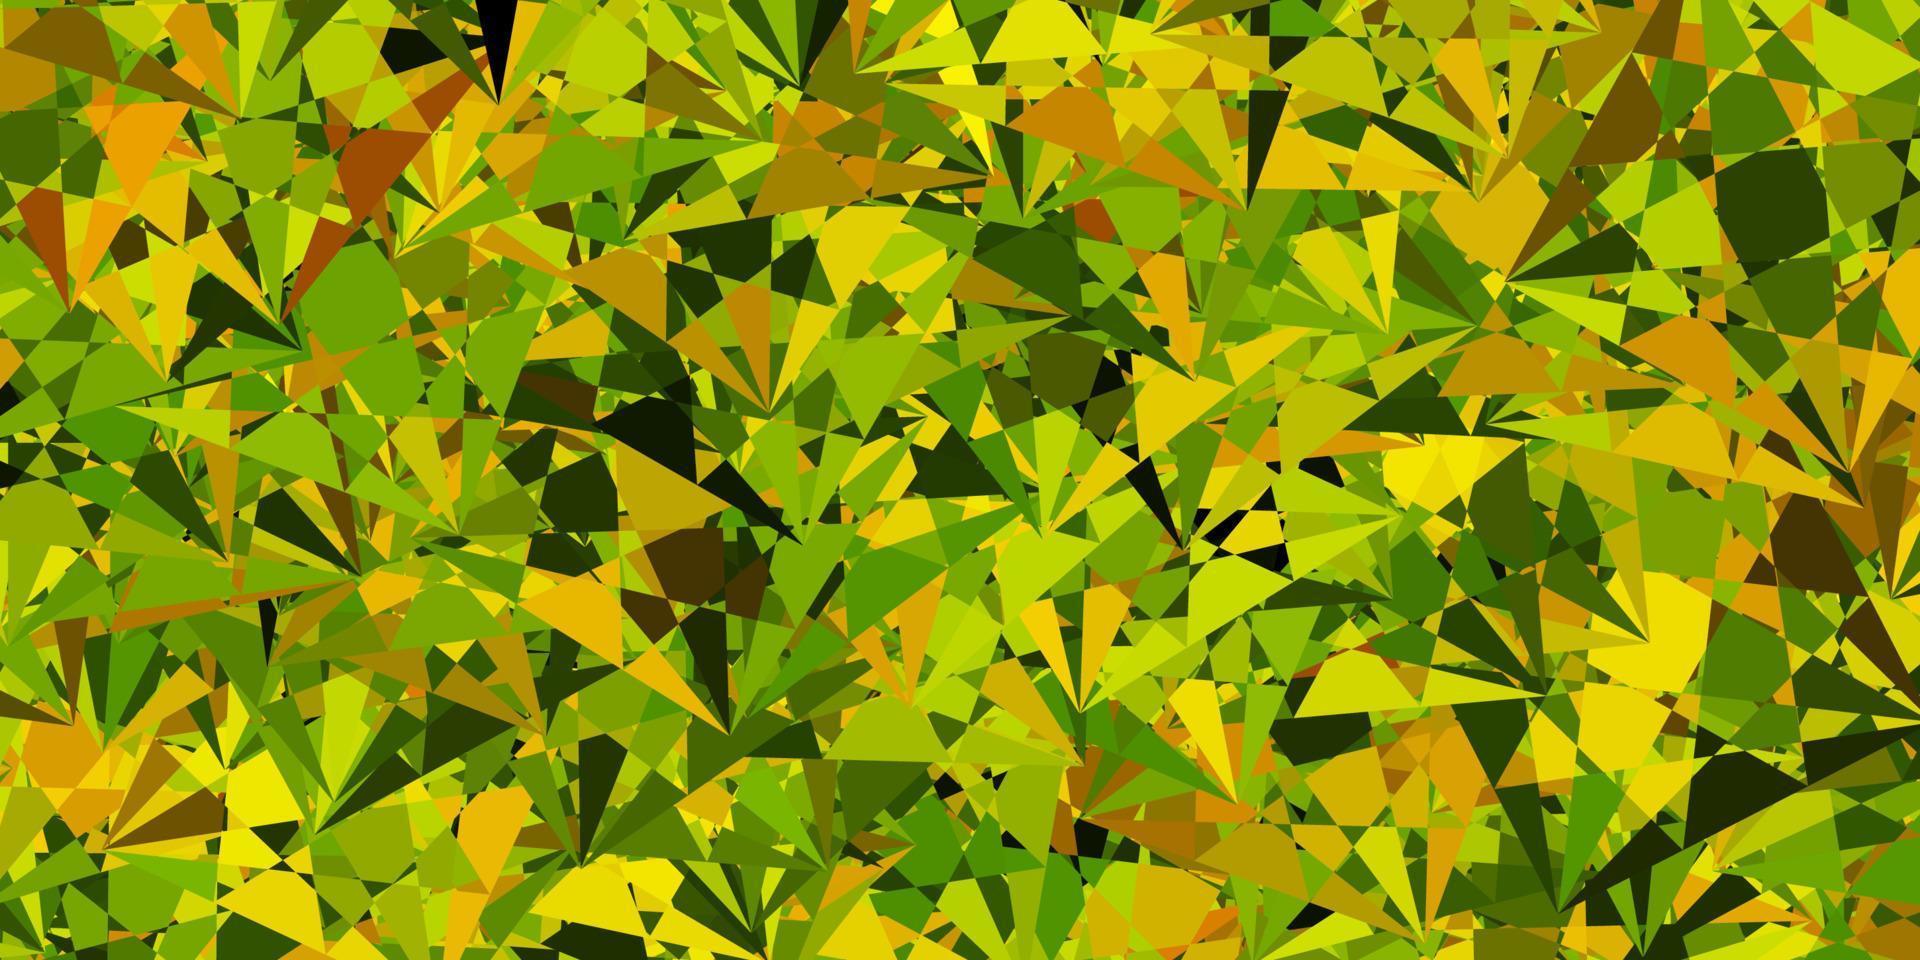 disposition de vecteur vert foncé, jaune avec des formes triangulaires.